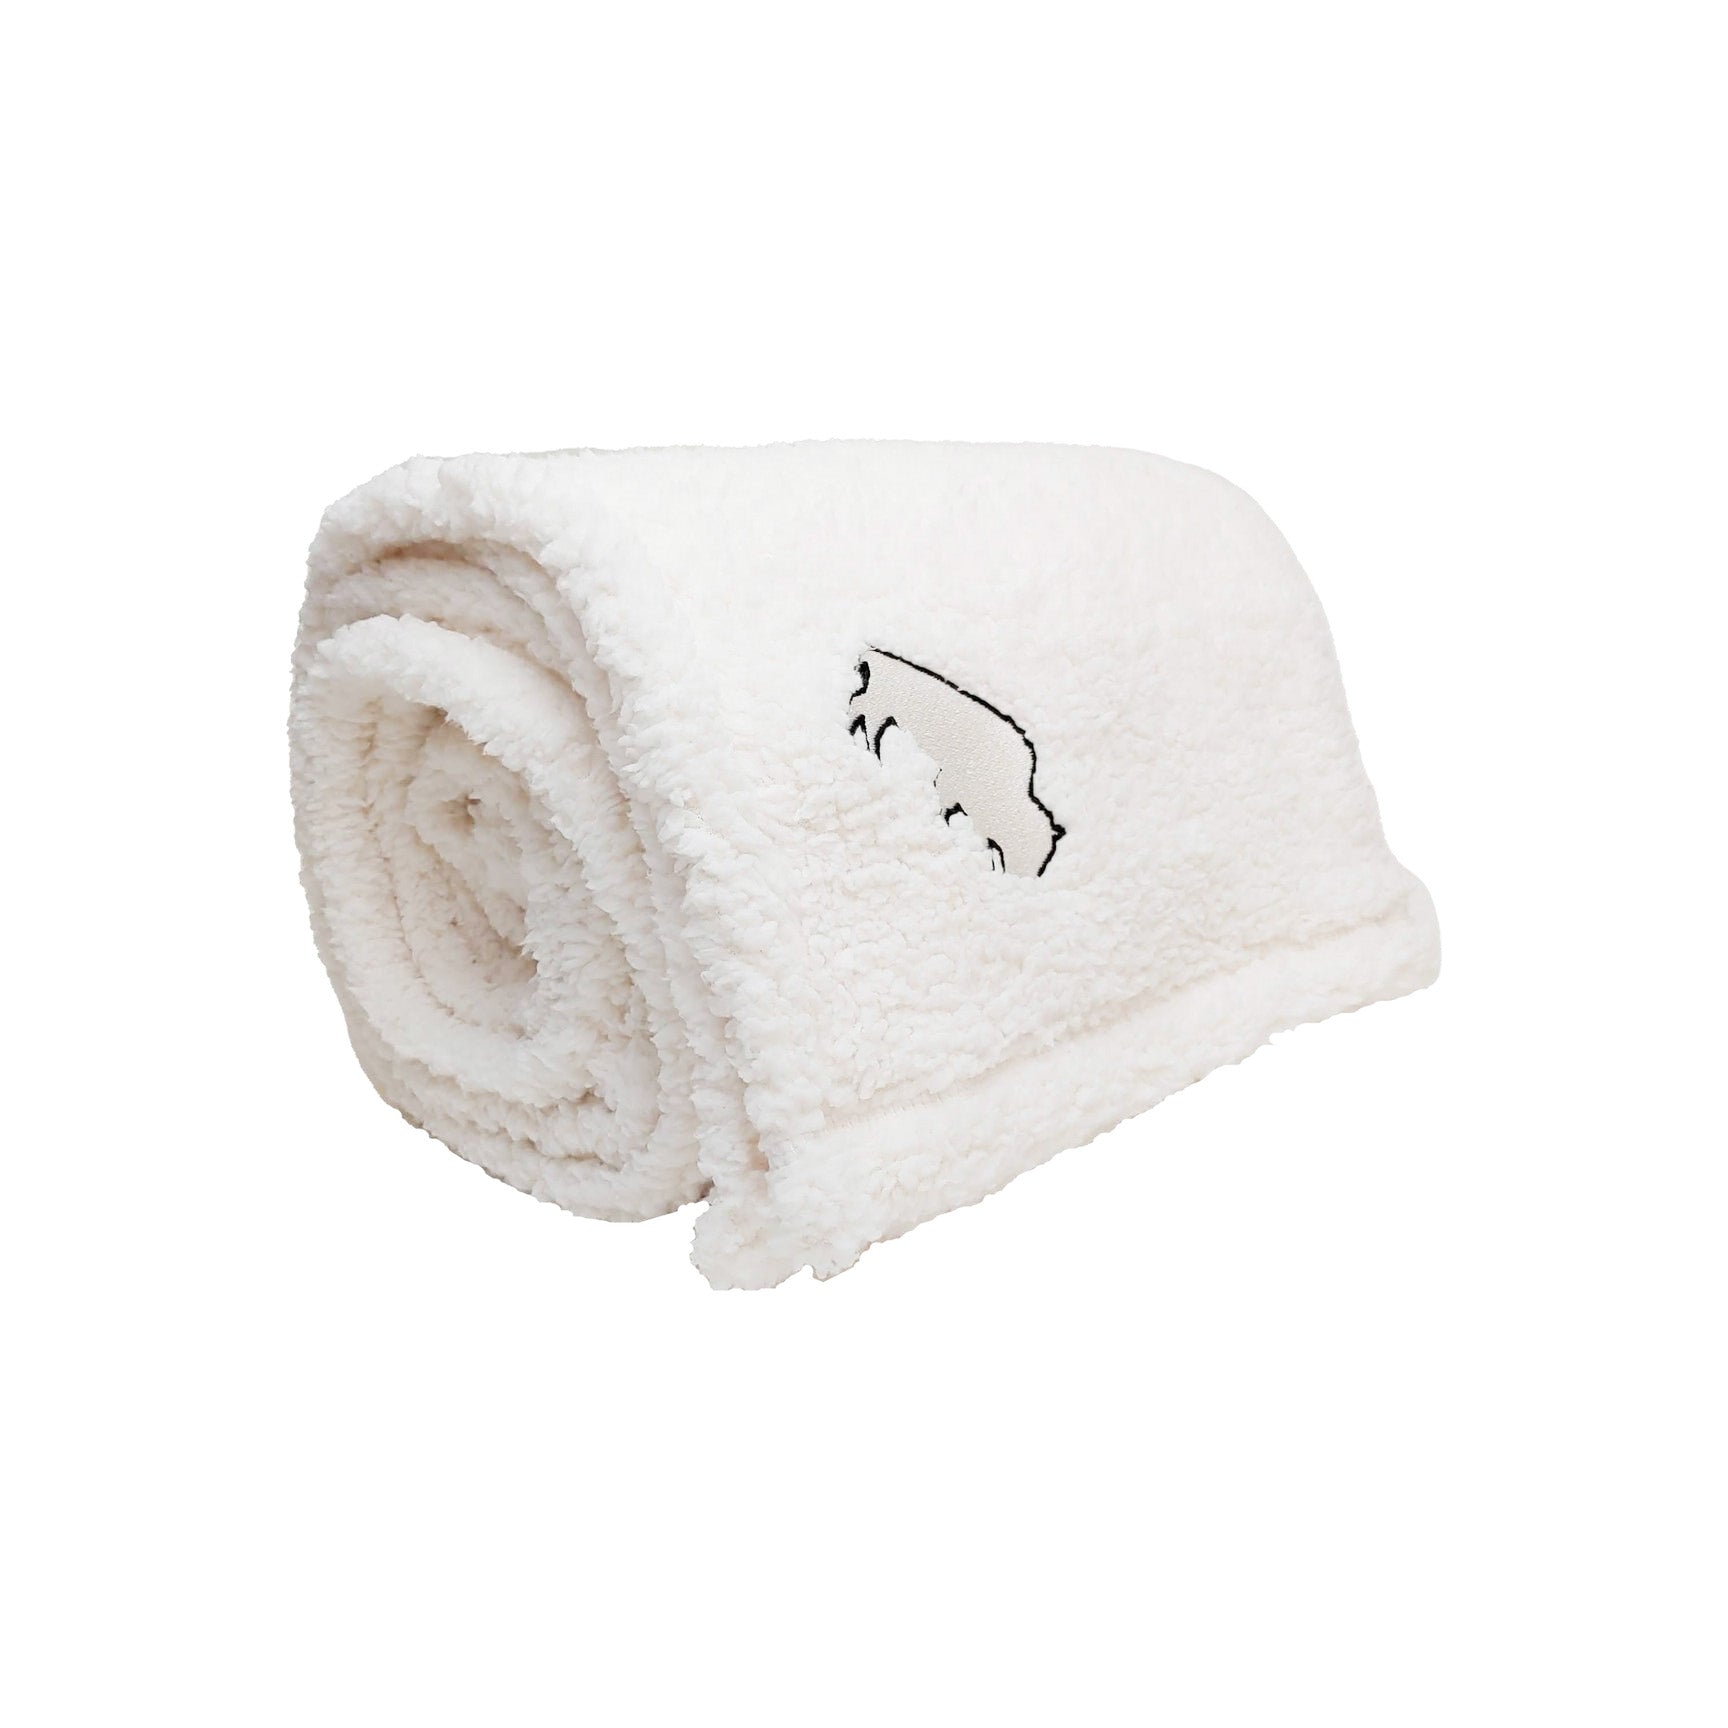 BFLO Marshmallow Cozy Blanket